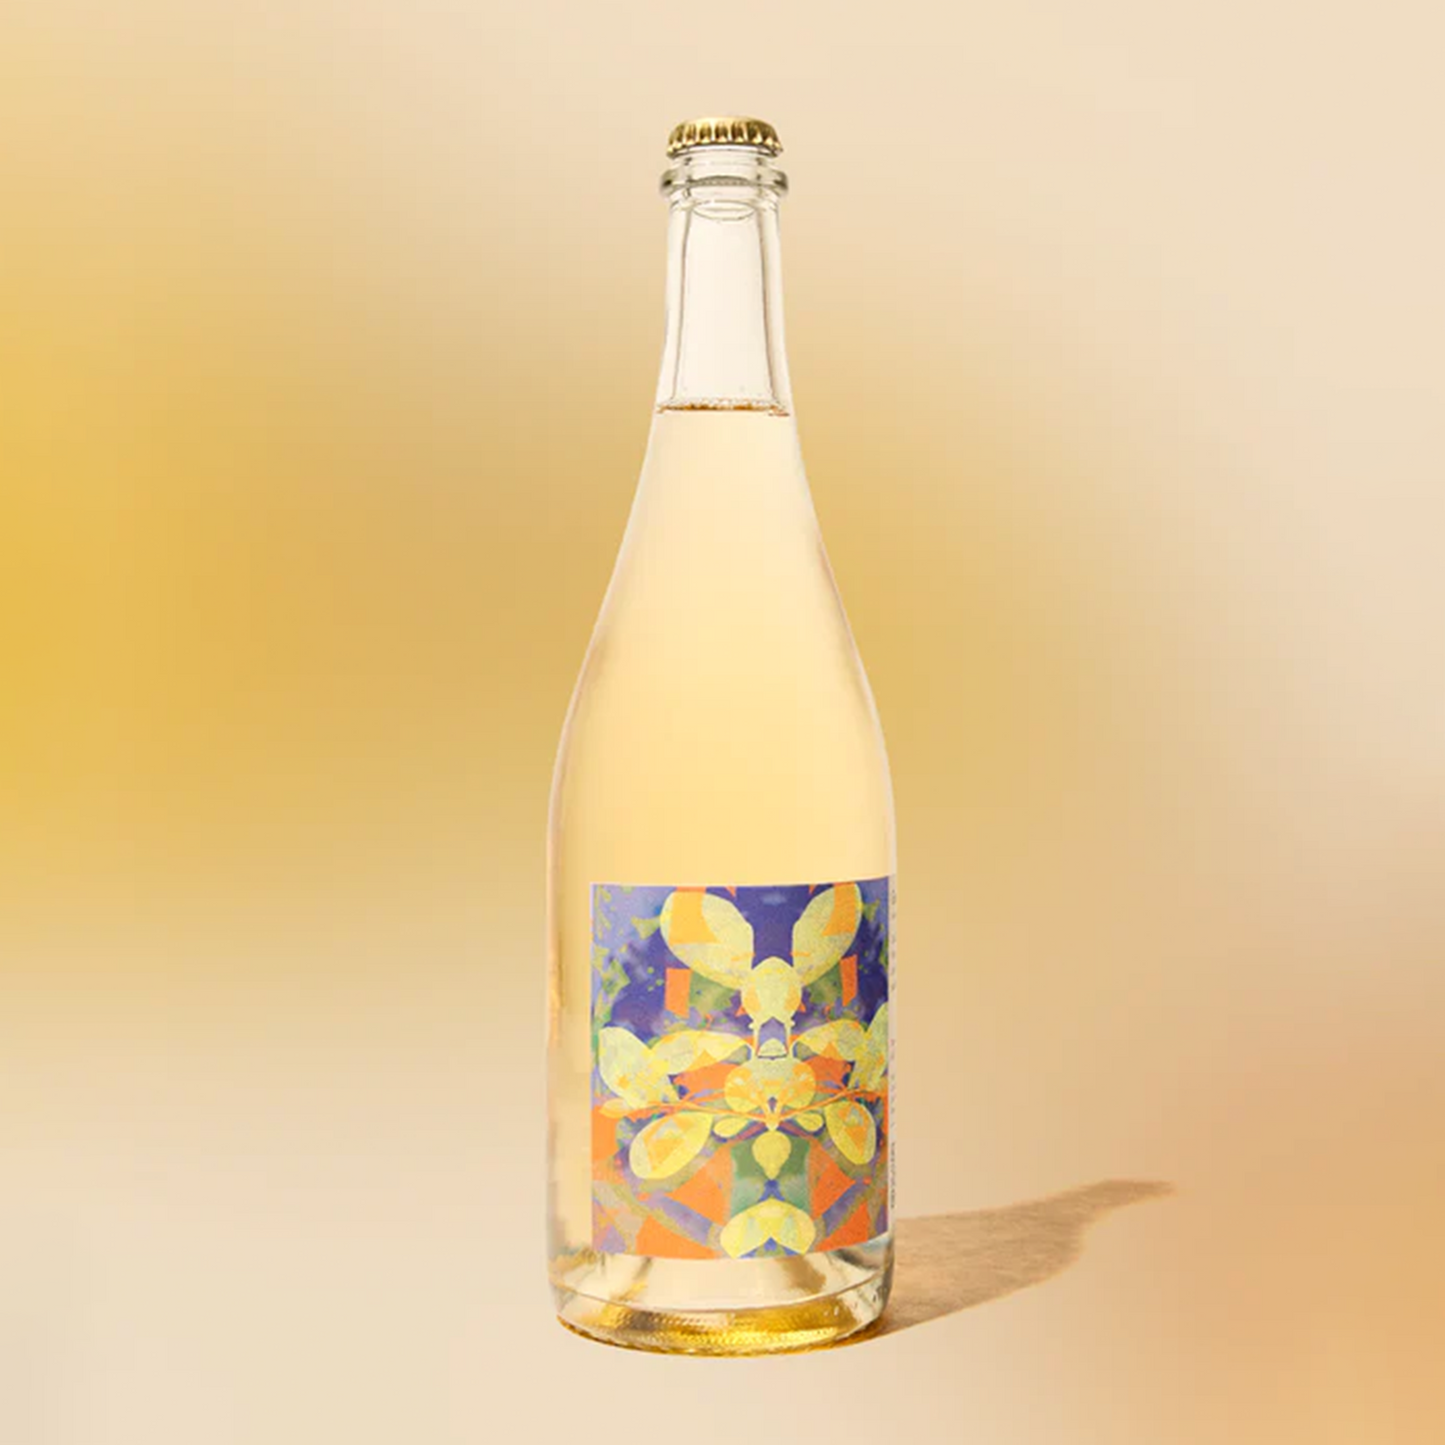 Kally Golden Sparkler (750 ml)